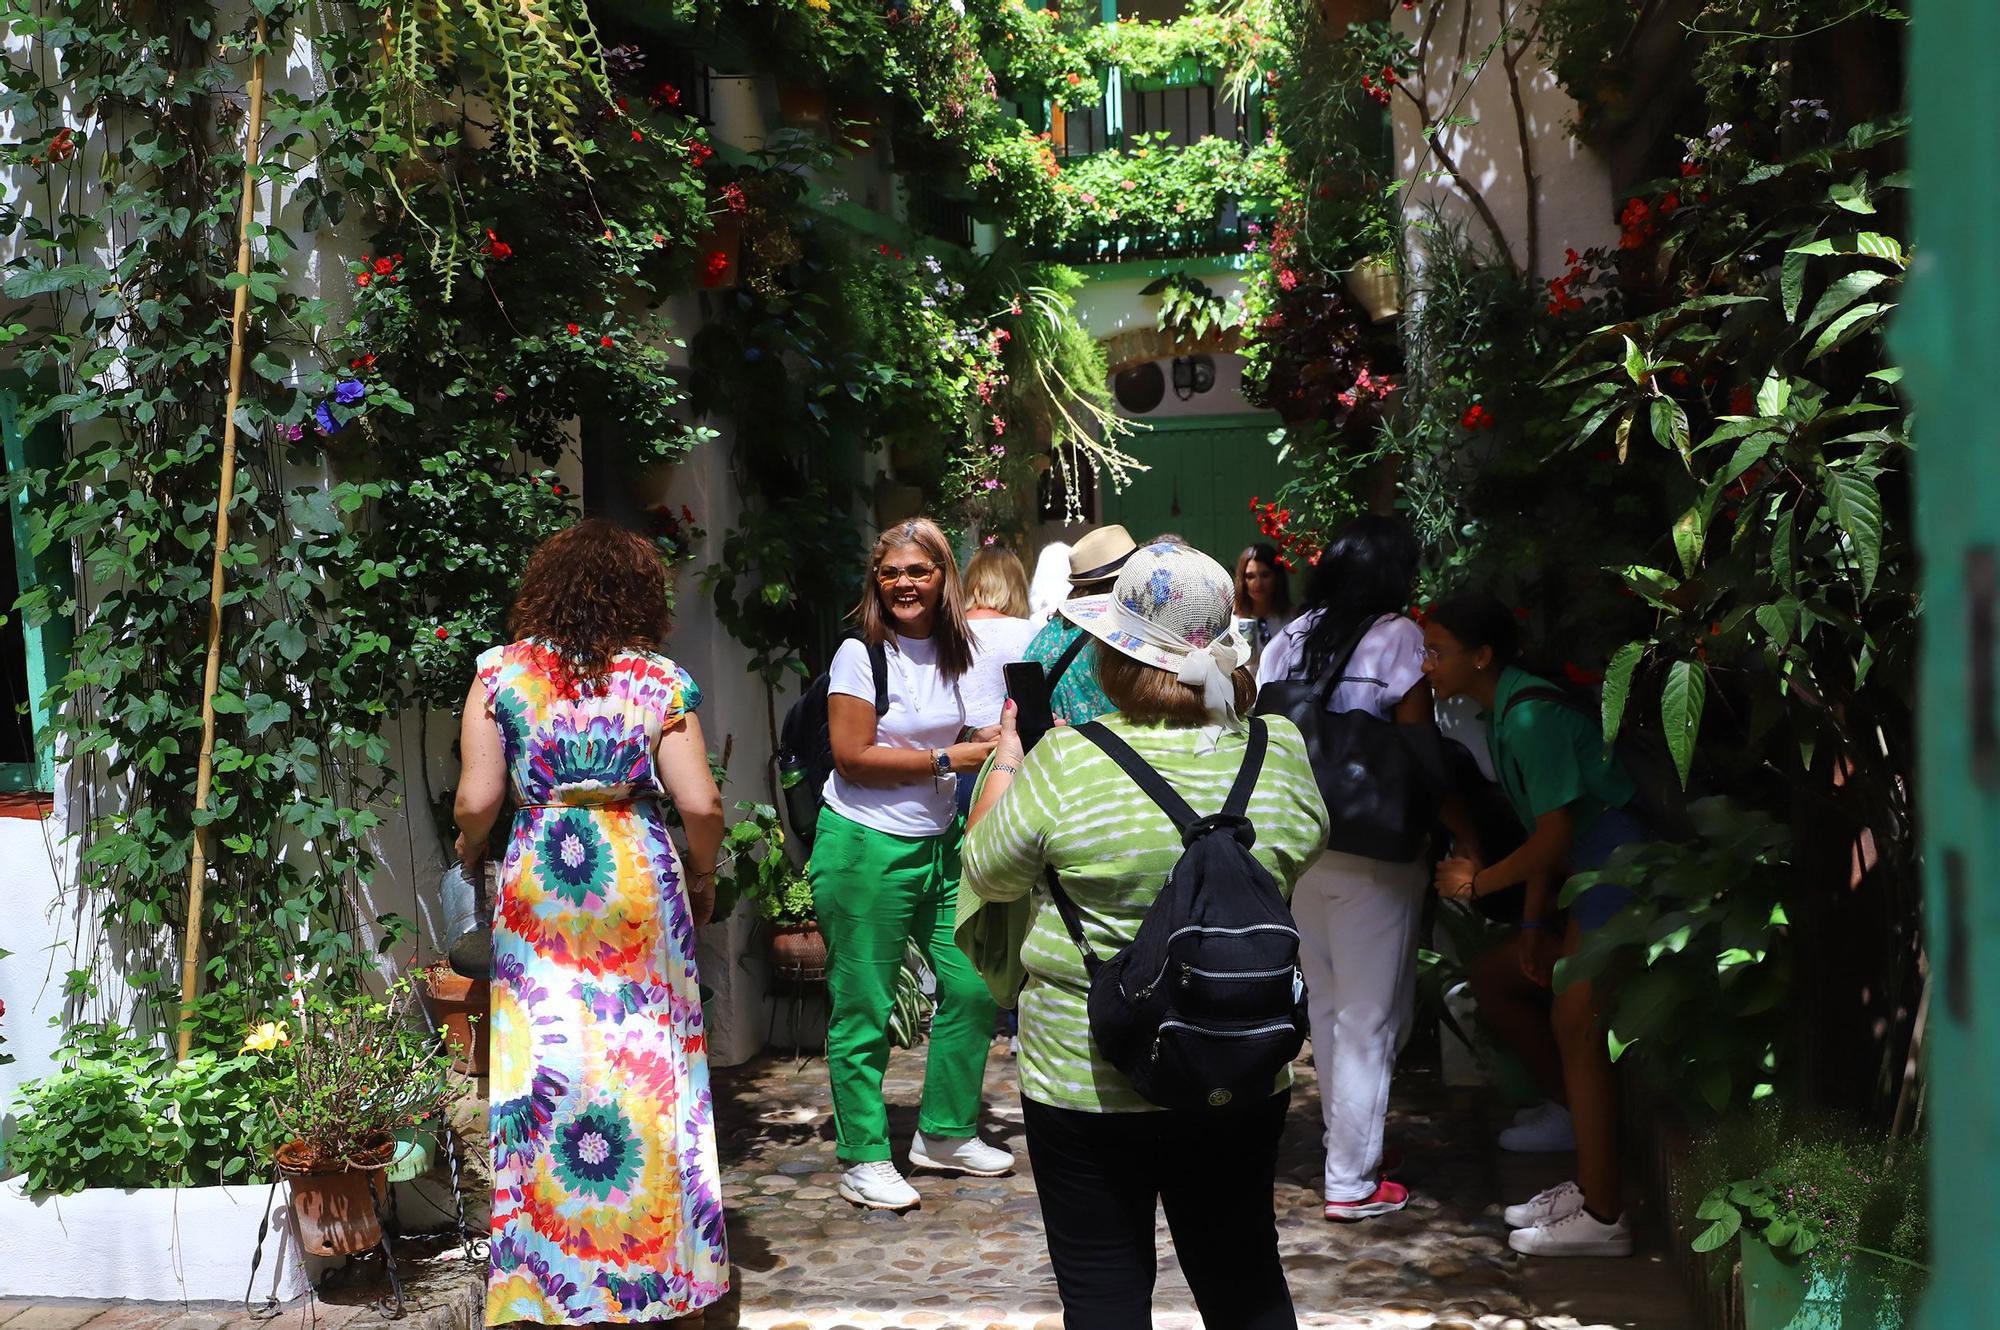 La fiesta de los patios inunda Córdoba de turistas